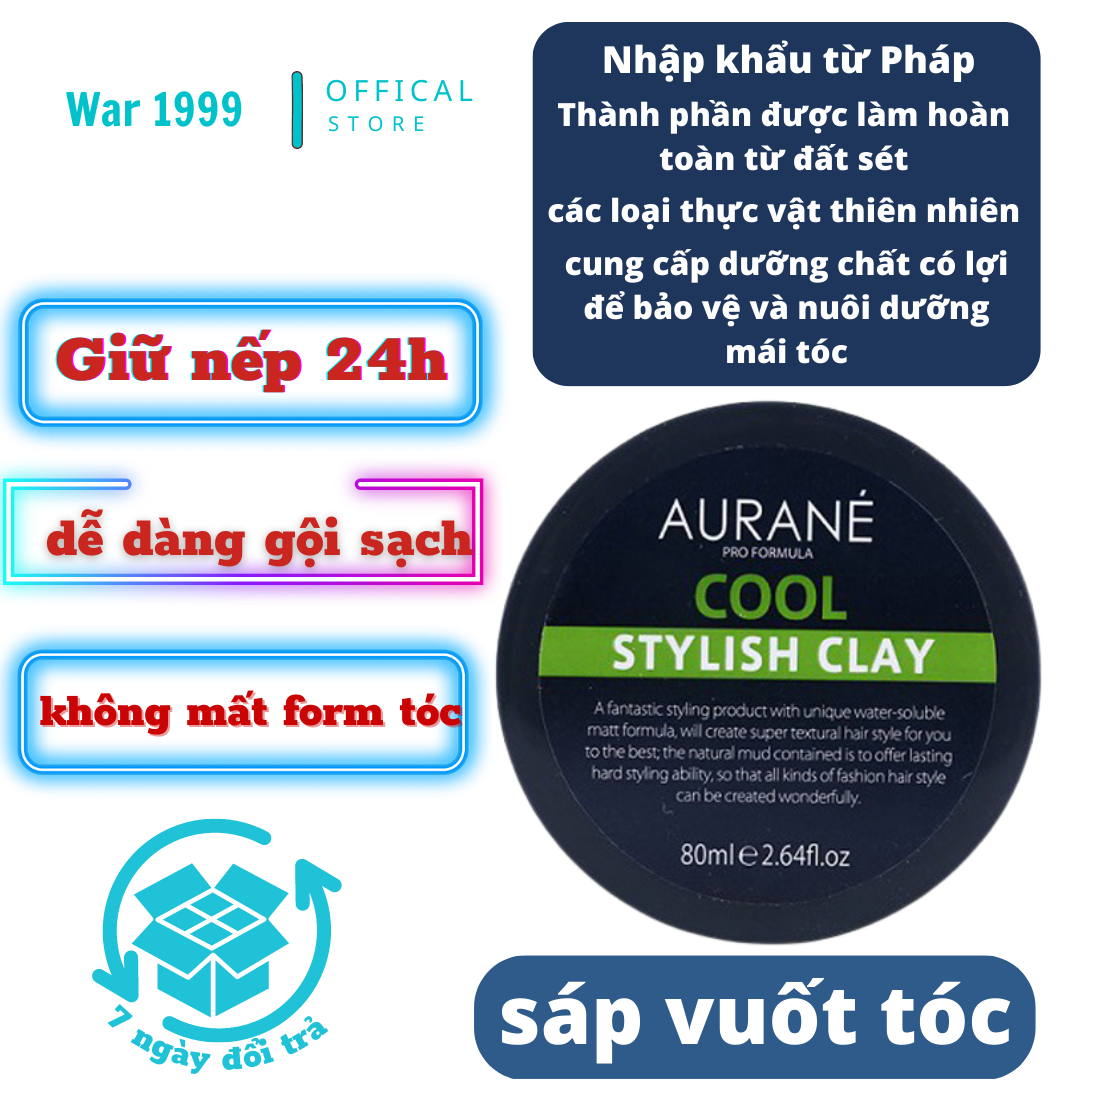 Sáp vuốt tóc Aurane cool stylish clay 80g  nhập khẩu Pháp  Shopee Việt Nam